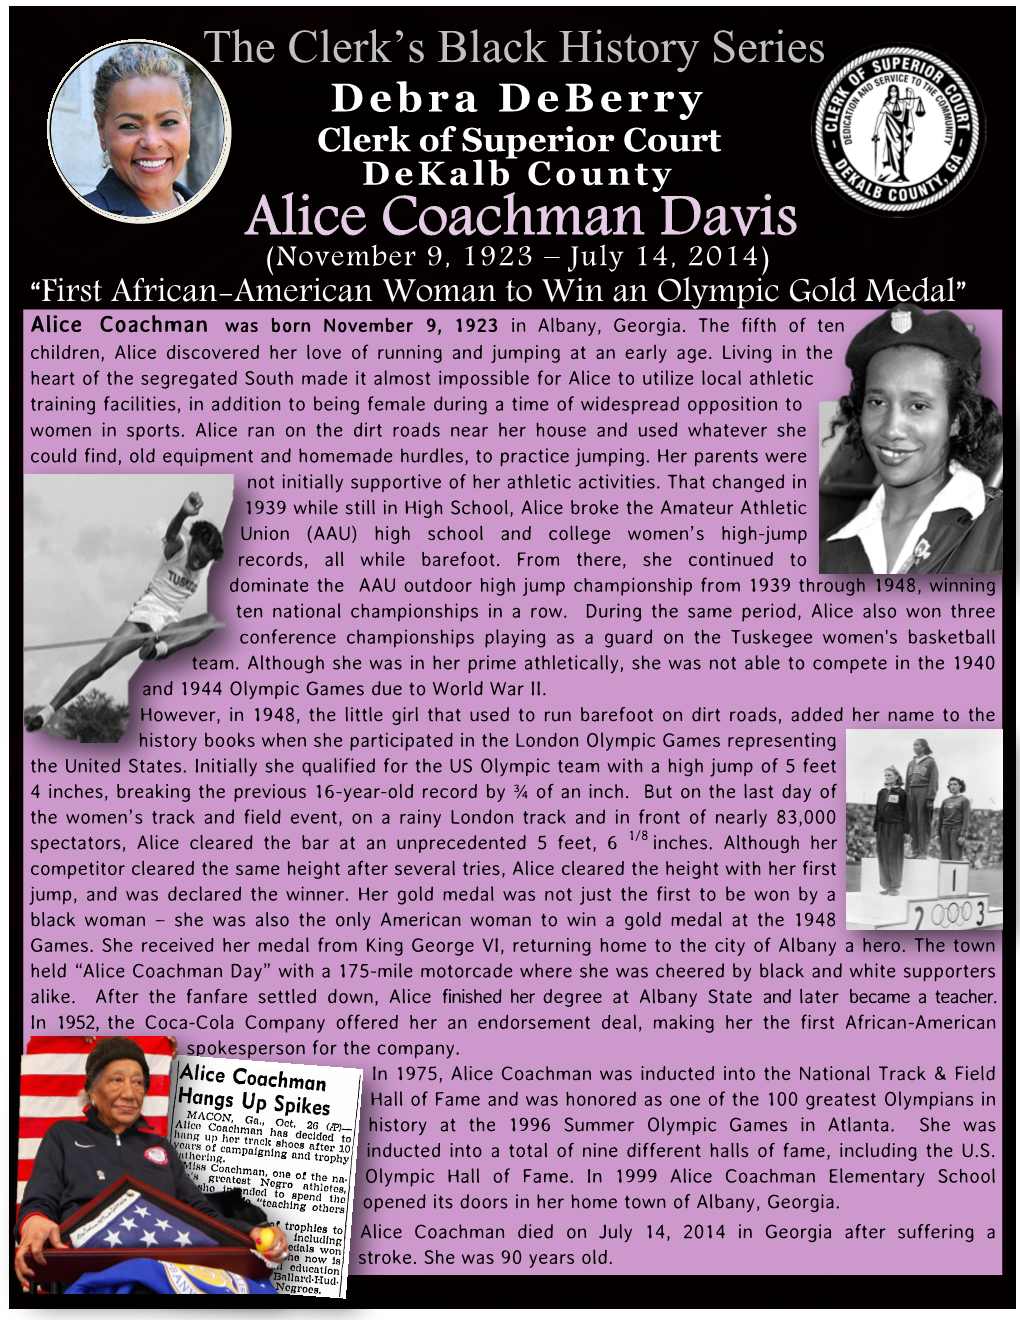 Alice Coachman Davis